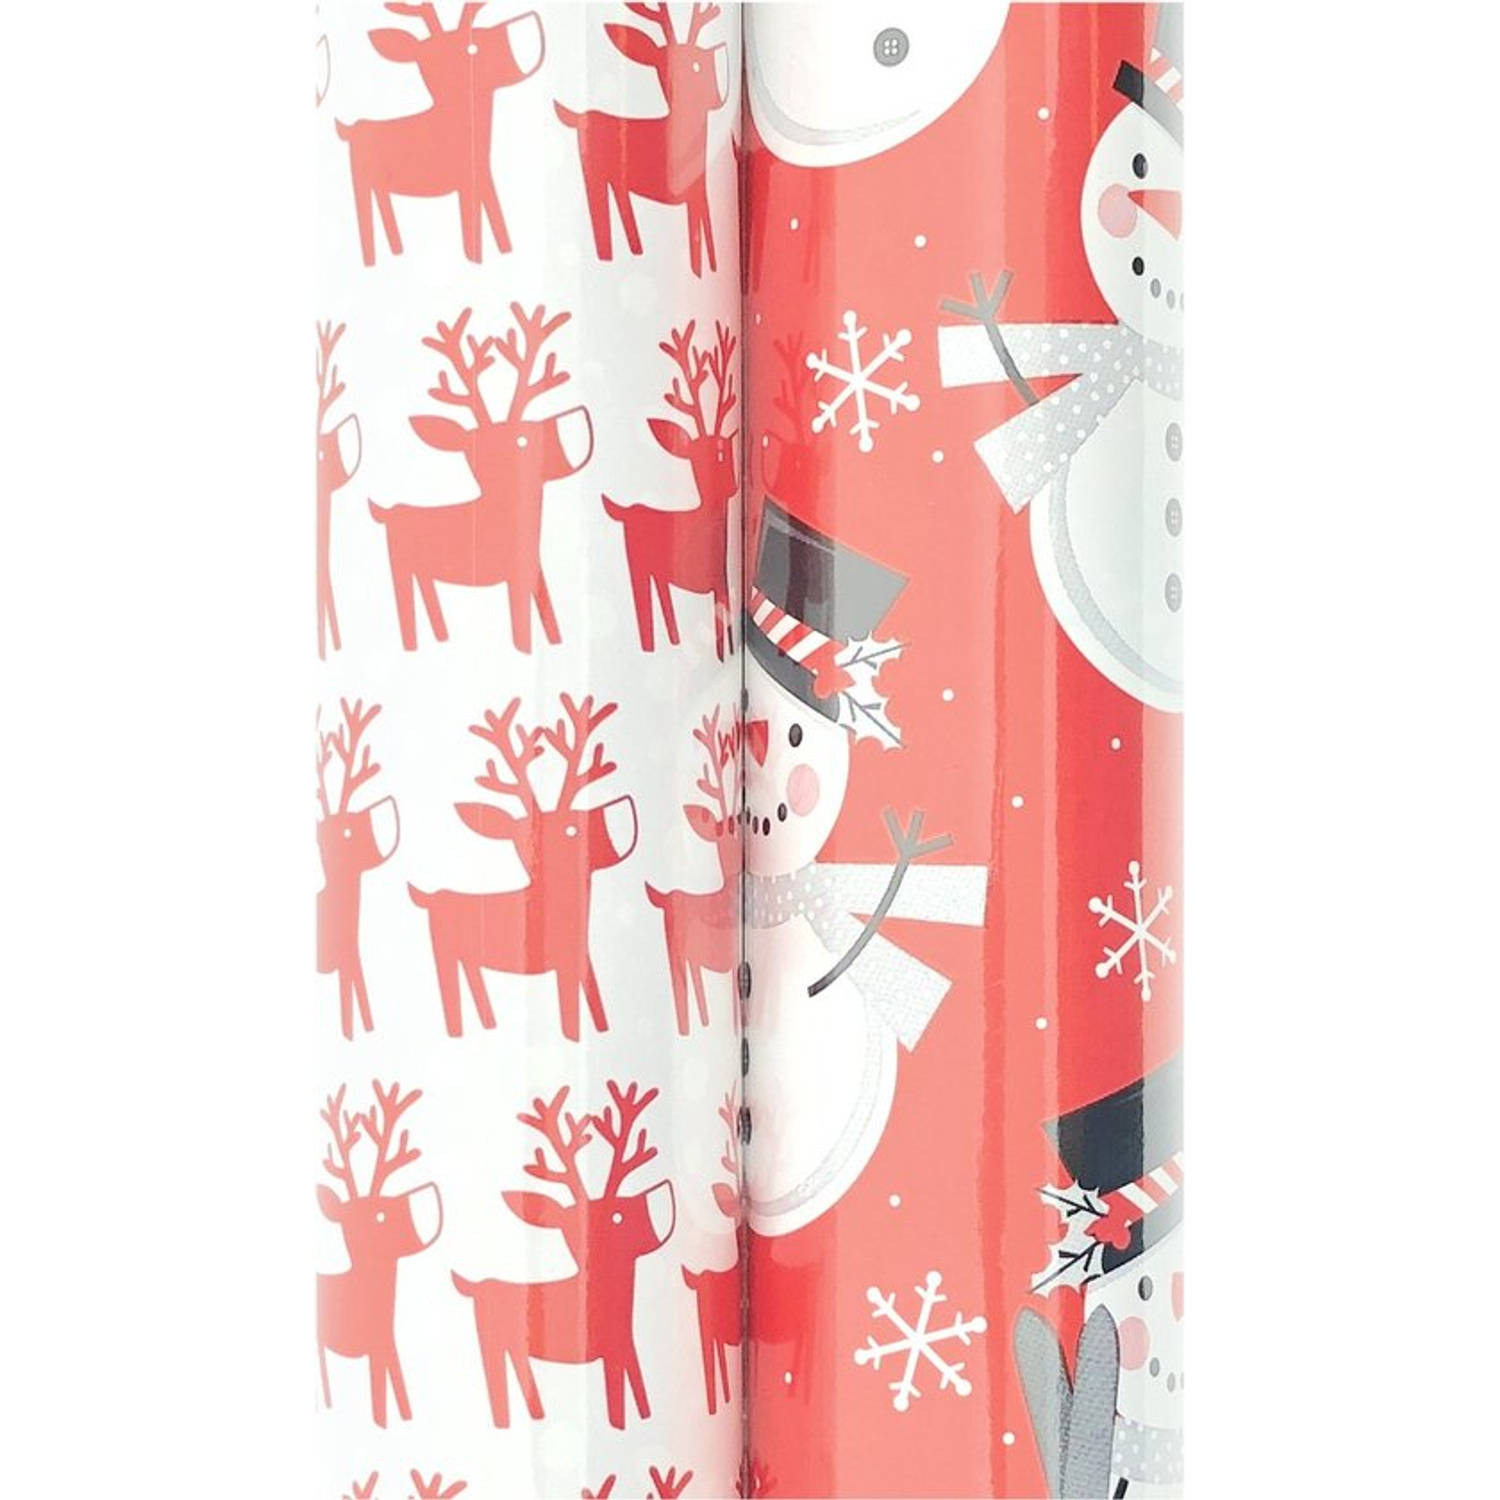 Kerstmis cadeaupapier - assortiment inpakpapier voor Kerst - 6 meter x 70 cm - 2 rollen